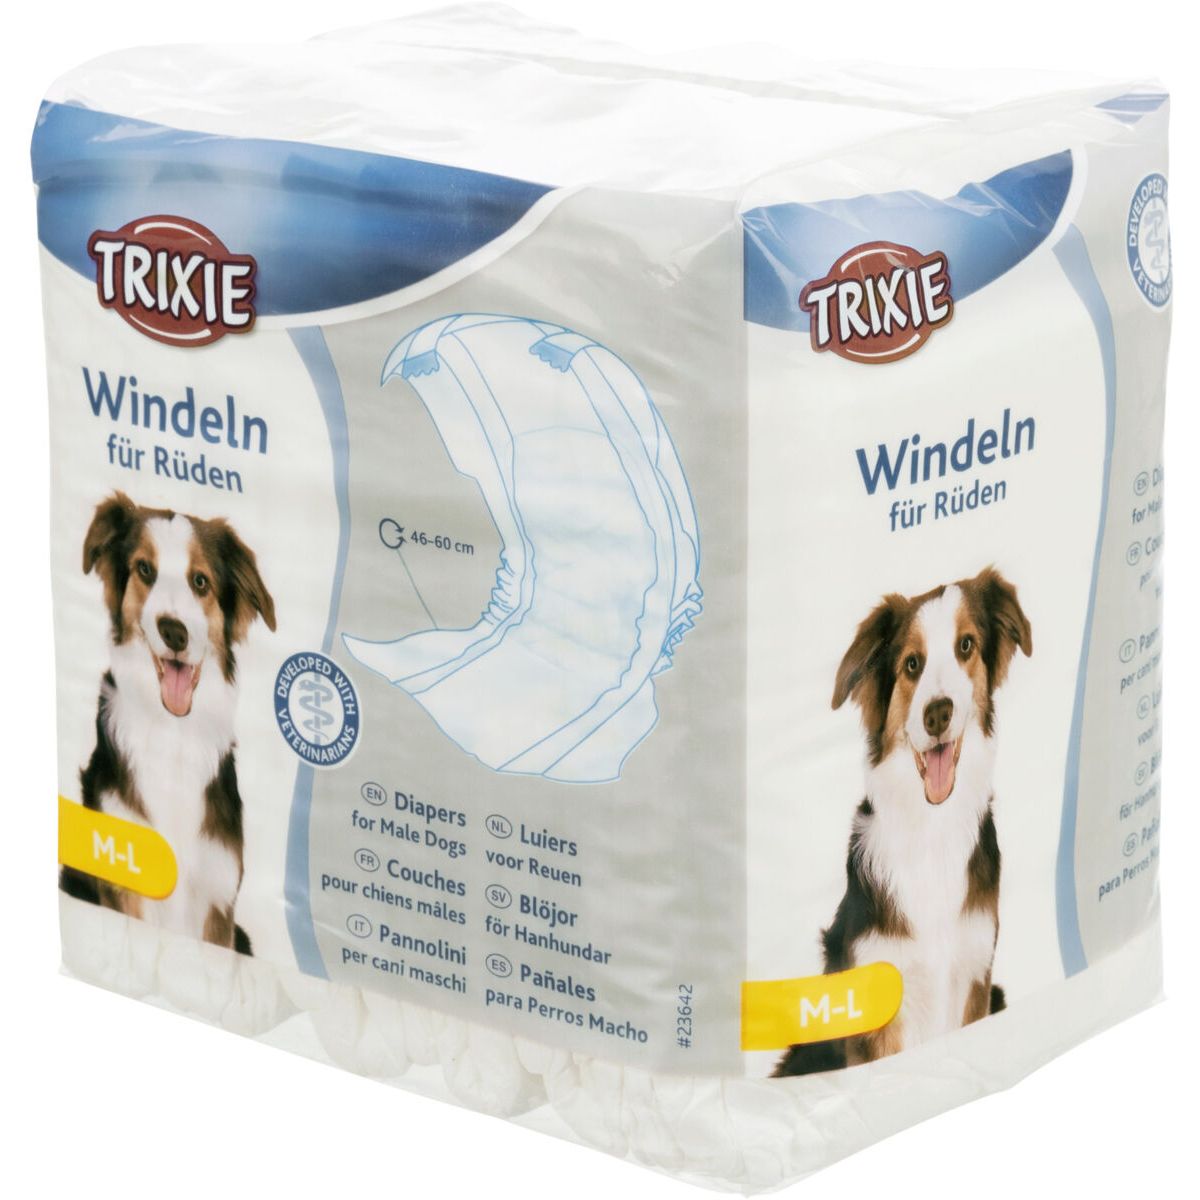 Підгузки для собак-хлопчиків Trixie 46-60 см M-L 12 шт. (23642) - фото 1